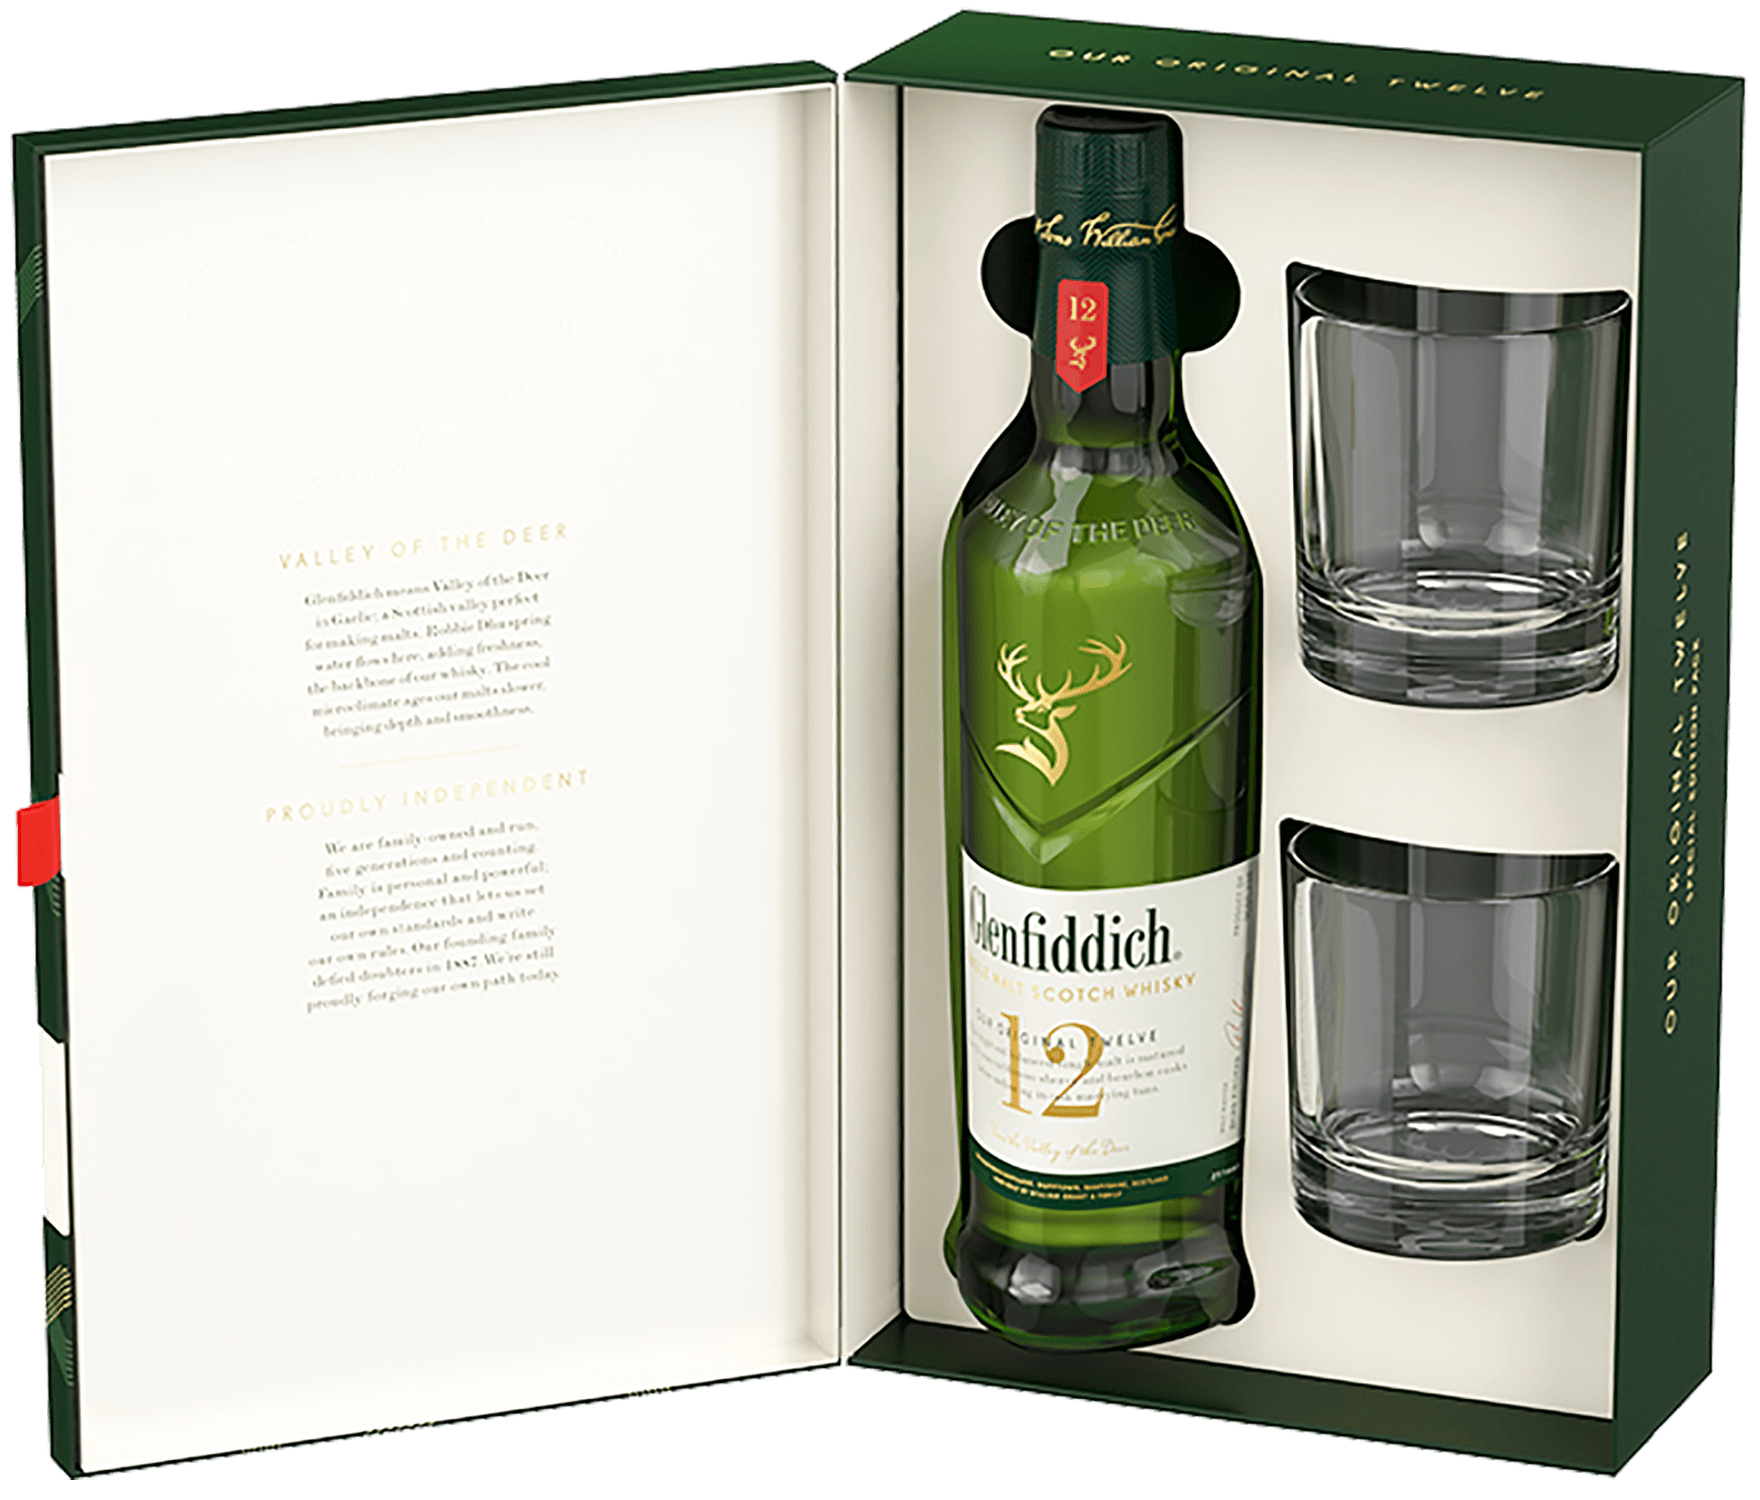 Glenfiddich Single Malt Scotch Whisky 12 y.o. (gift box with 2 glasses) glenfiddich single malt scotch whisky 12 y o gift box